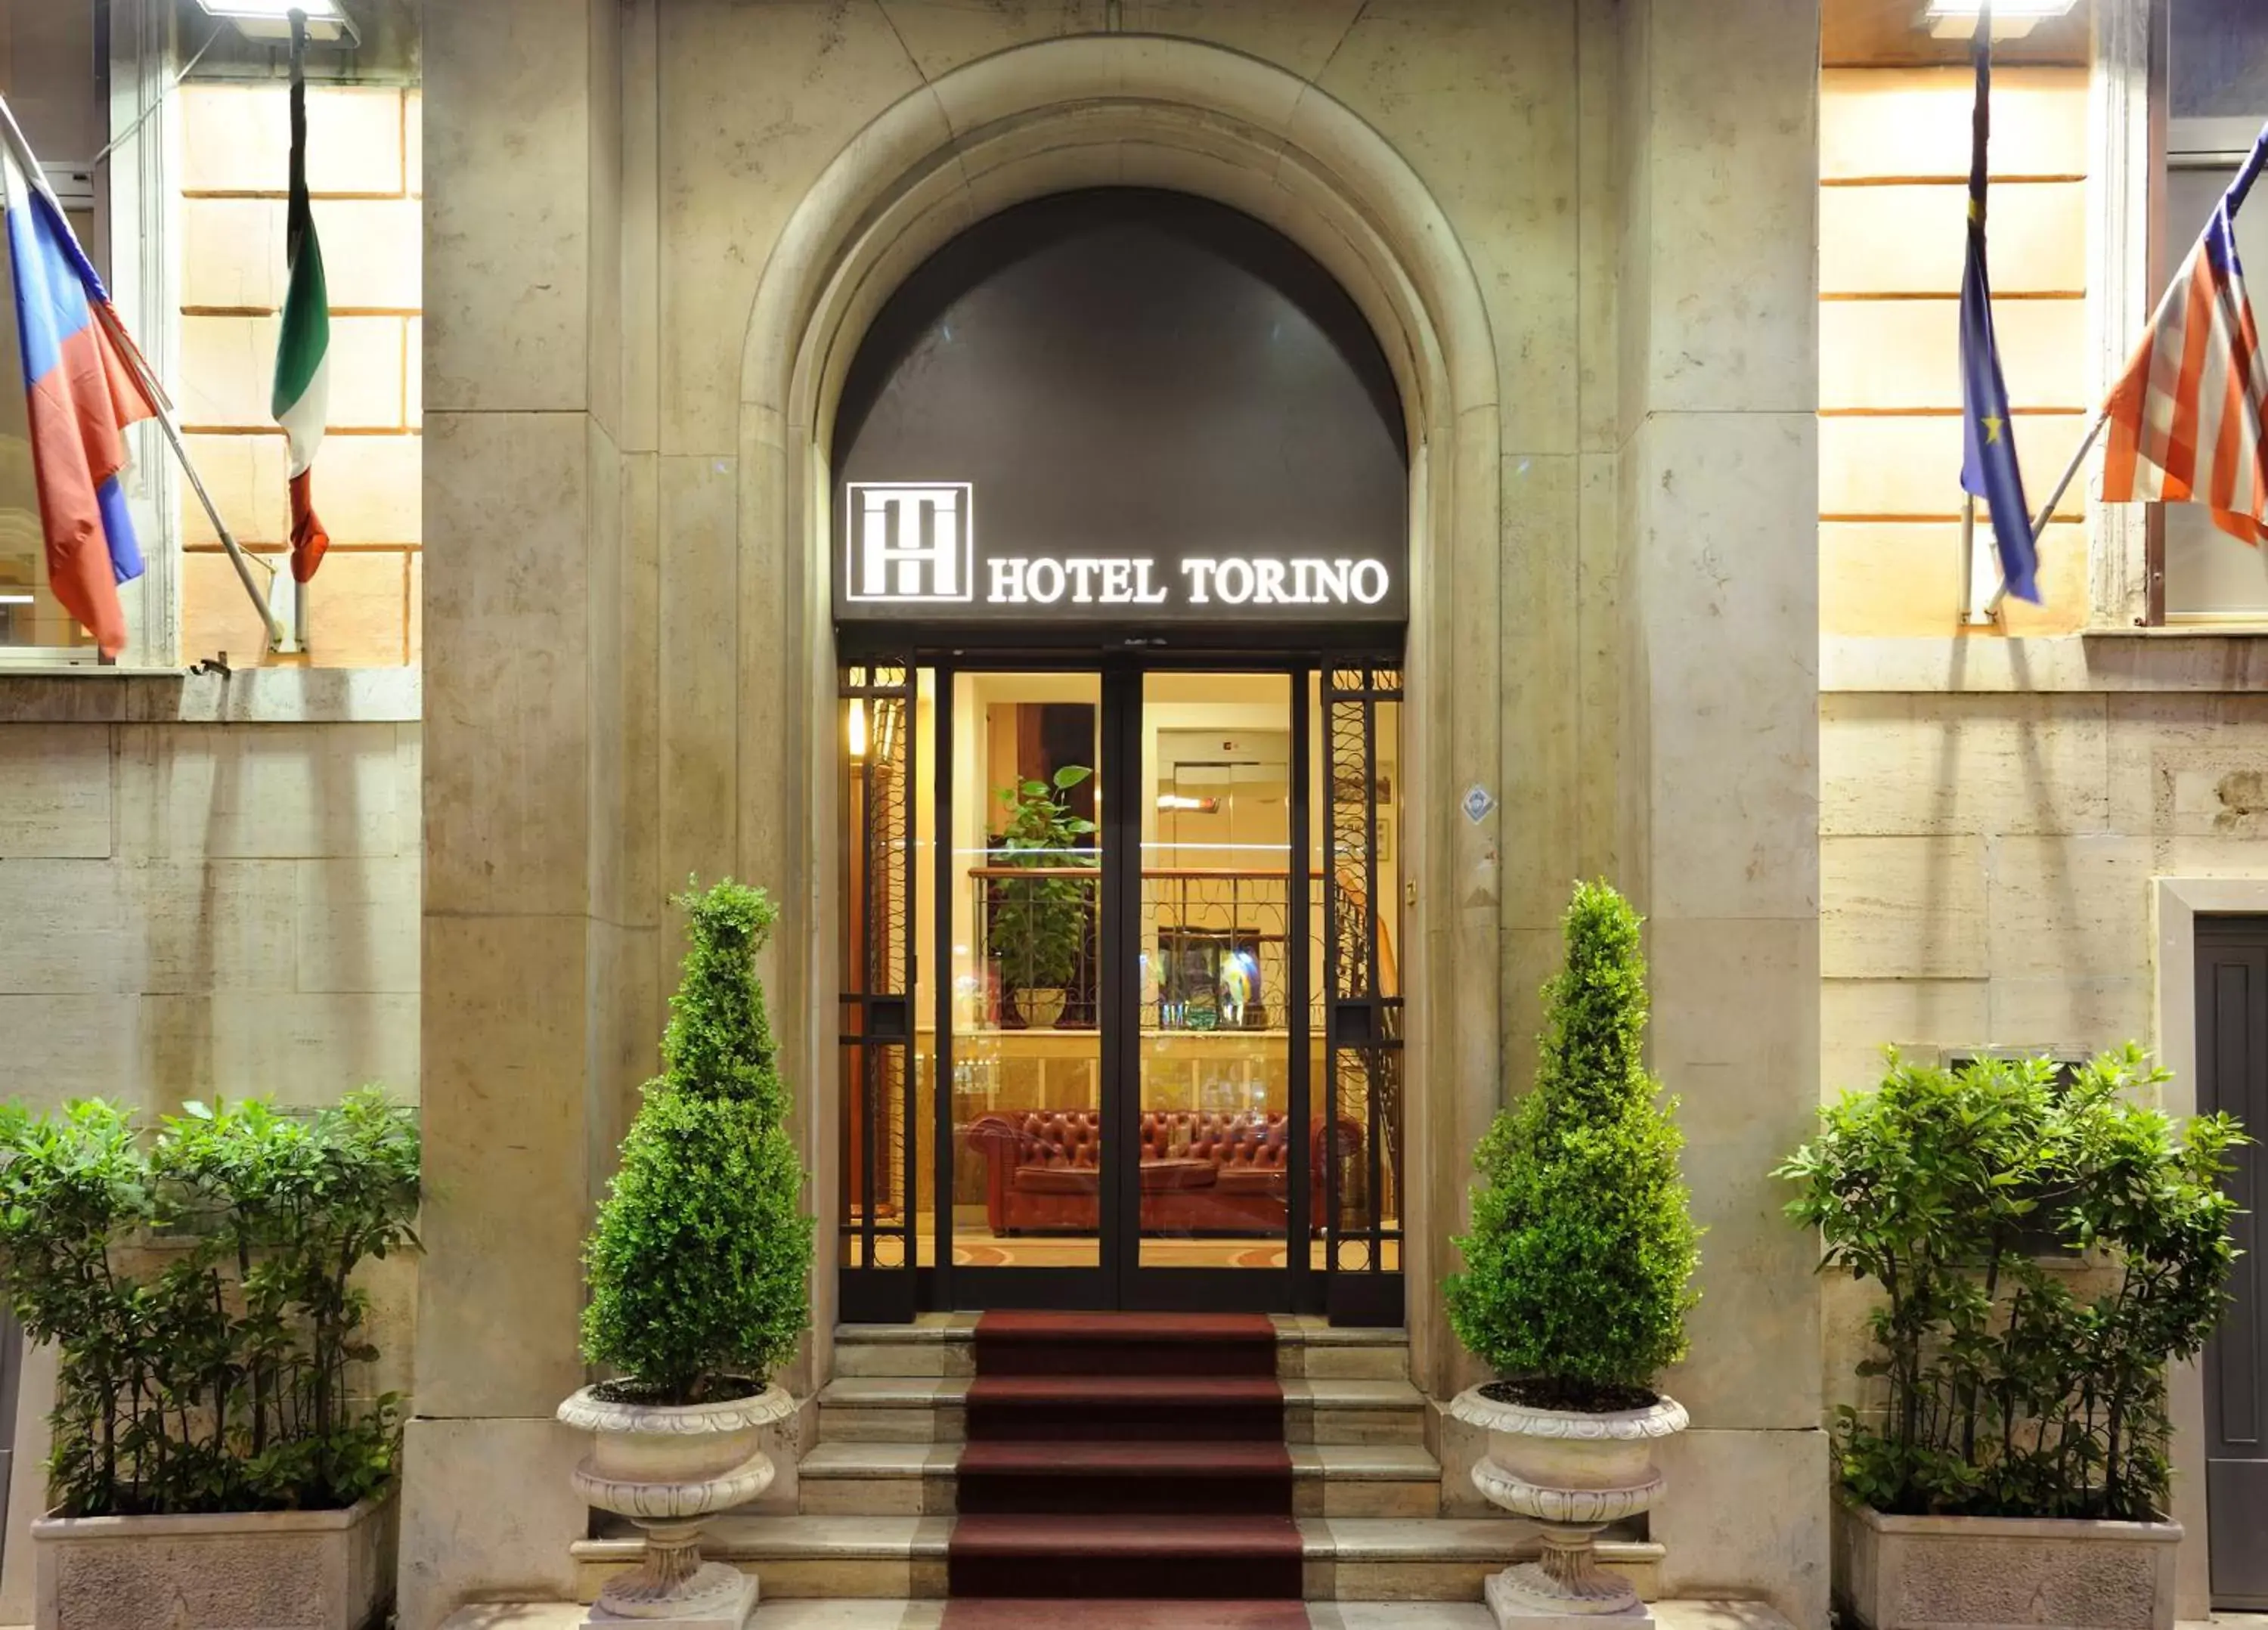 Facade/entrance in Hotel Torino